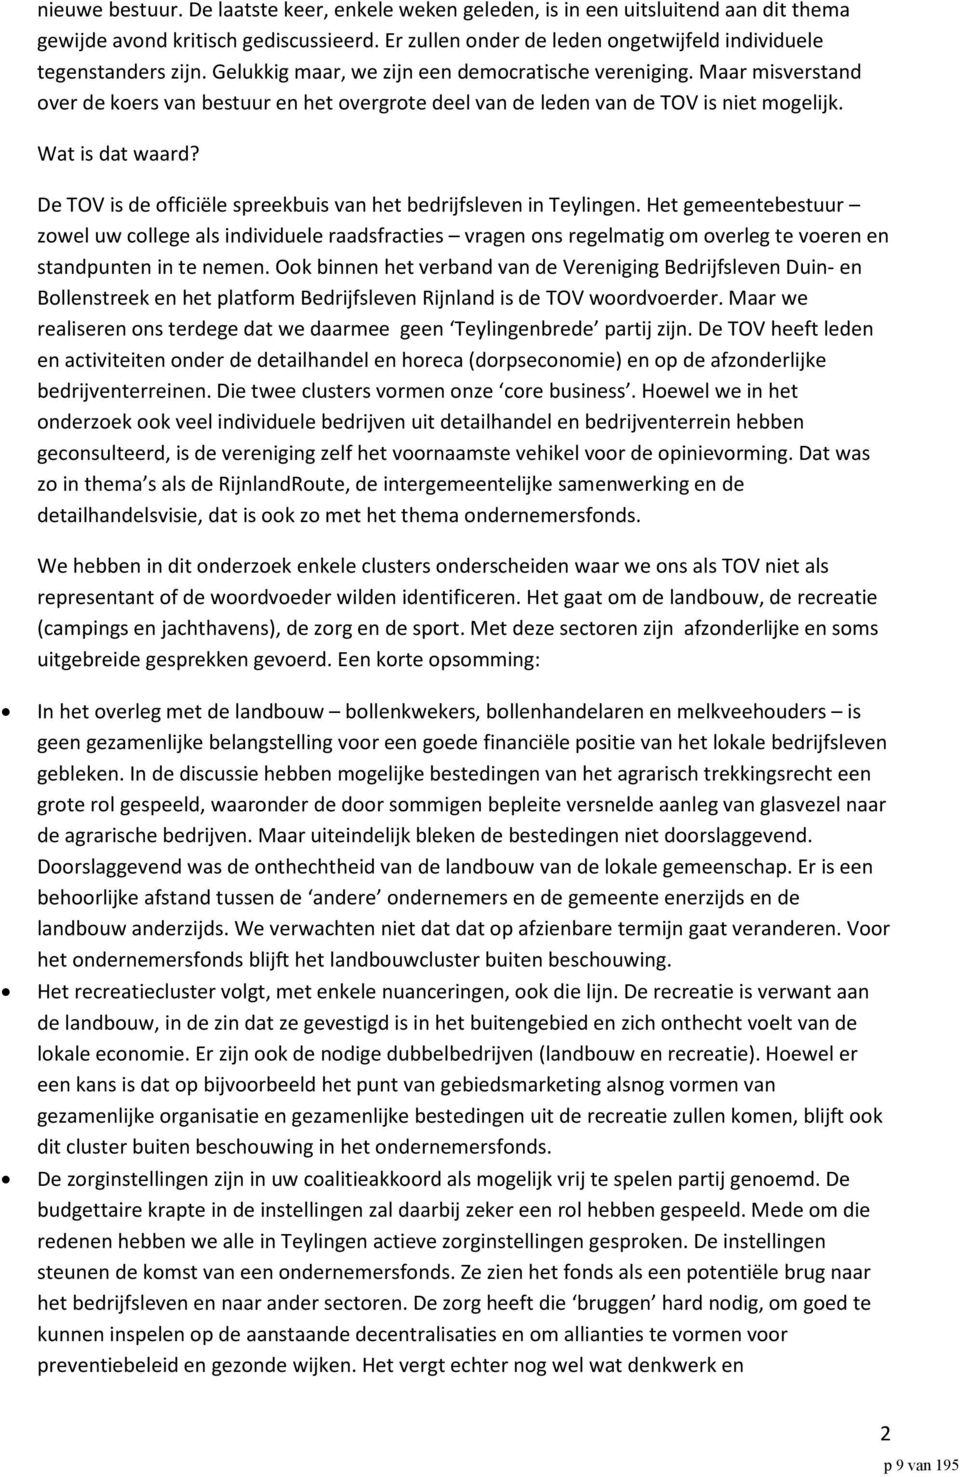 De TOV is de officiële spreekbuis van het bedrijfsleven in Teylingen.